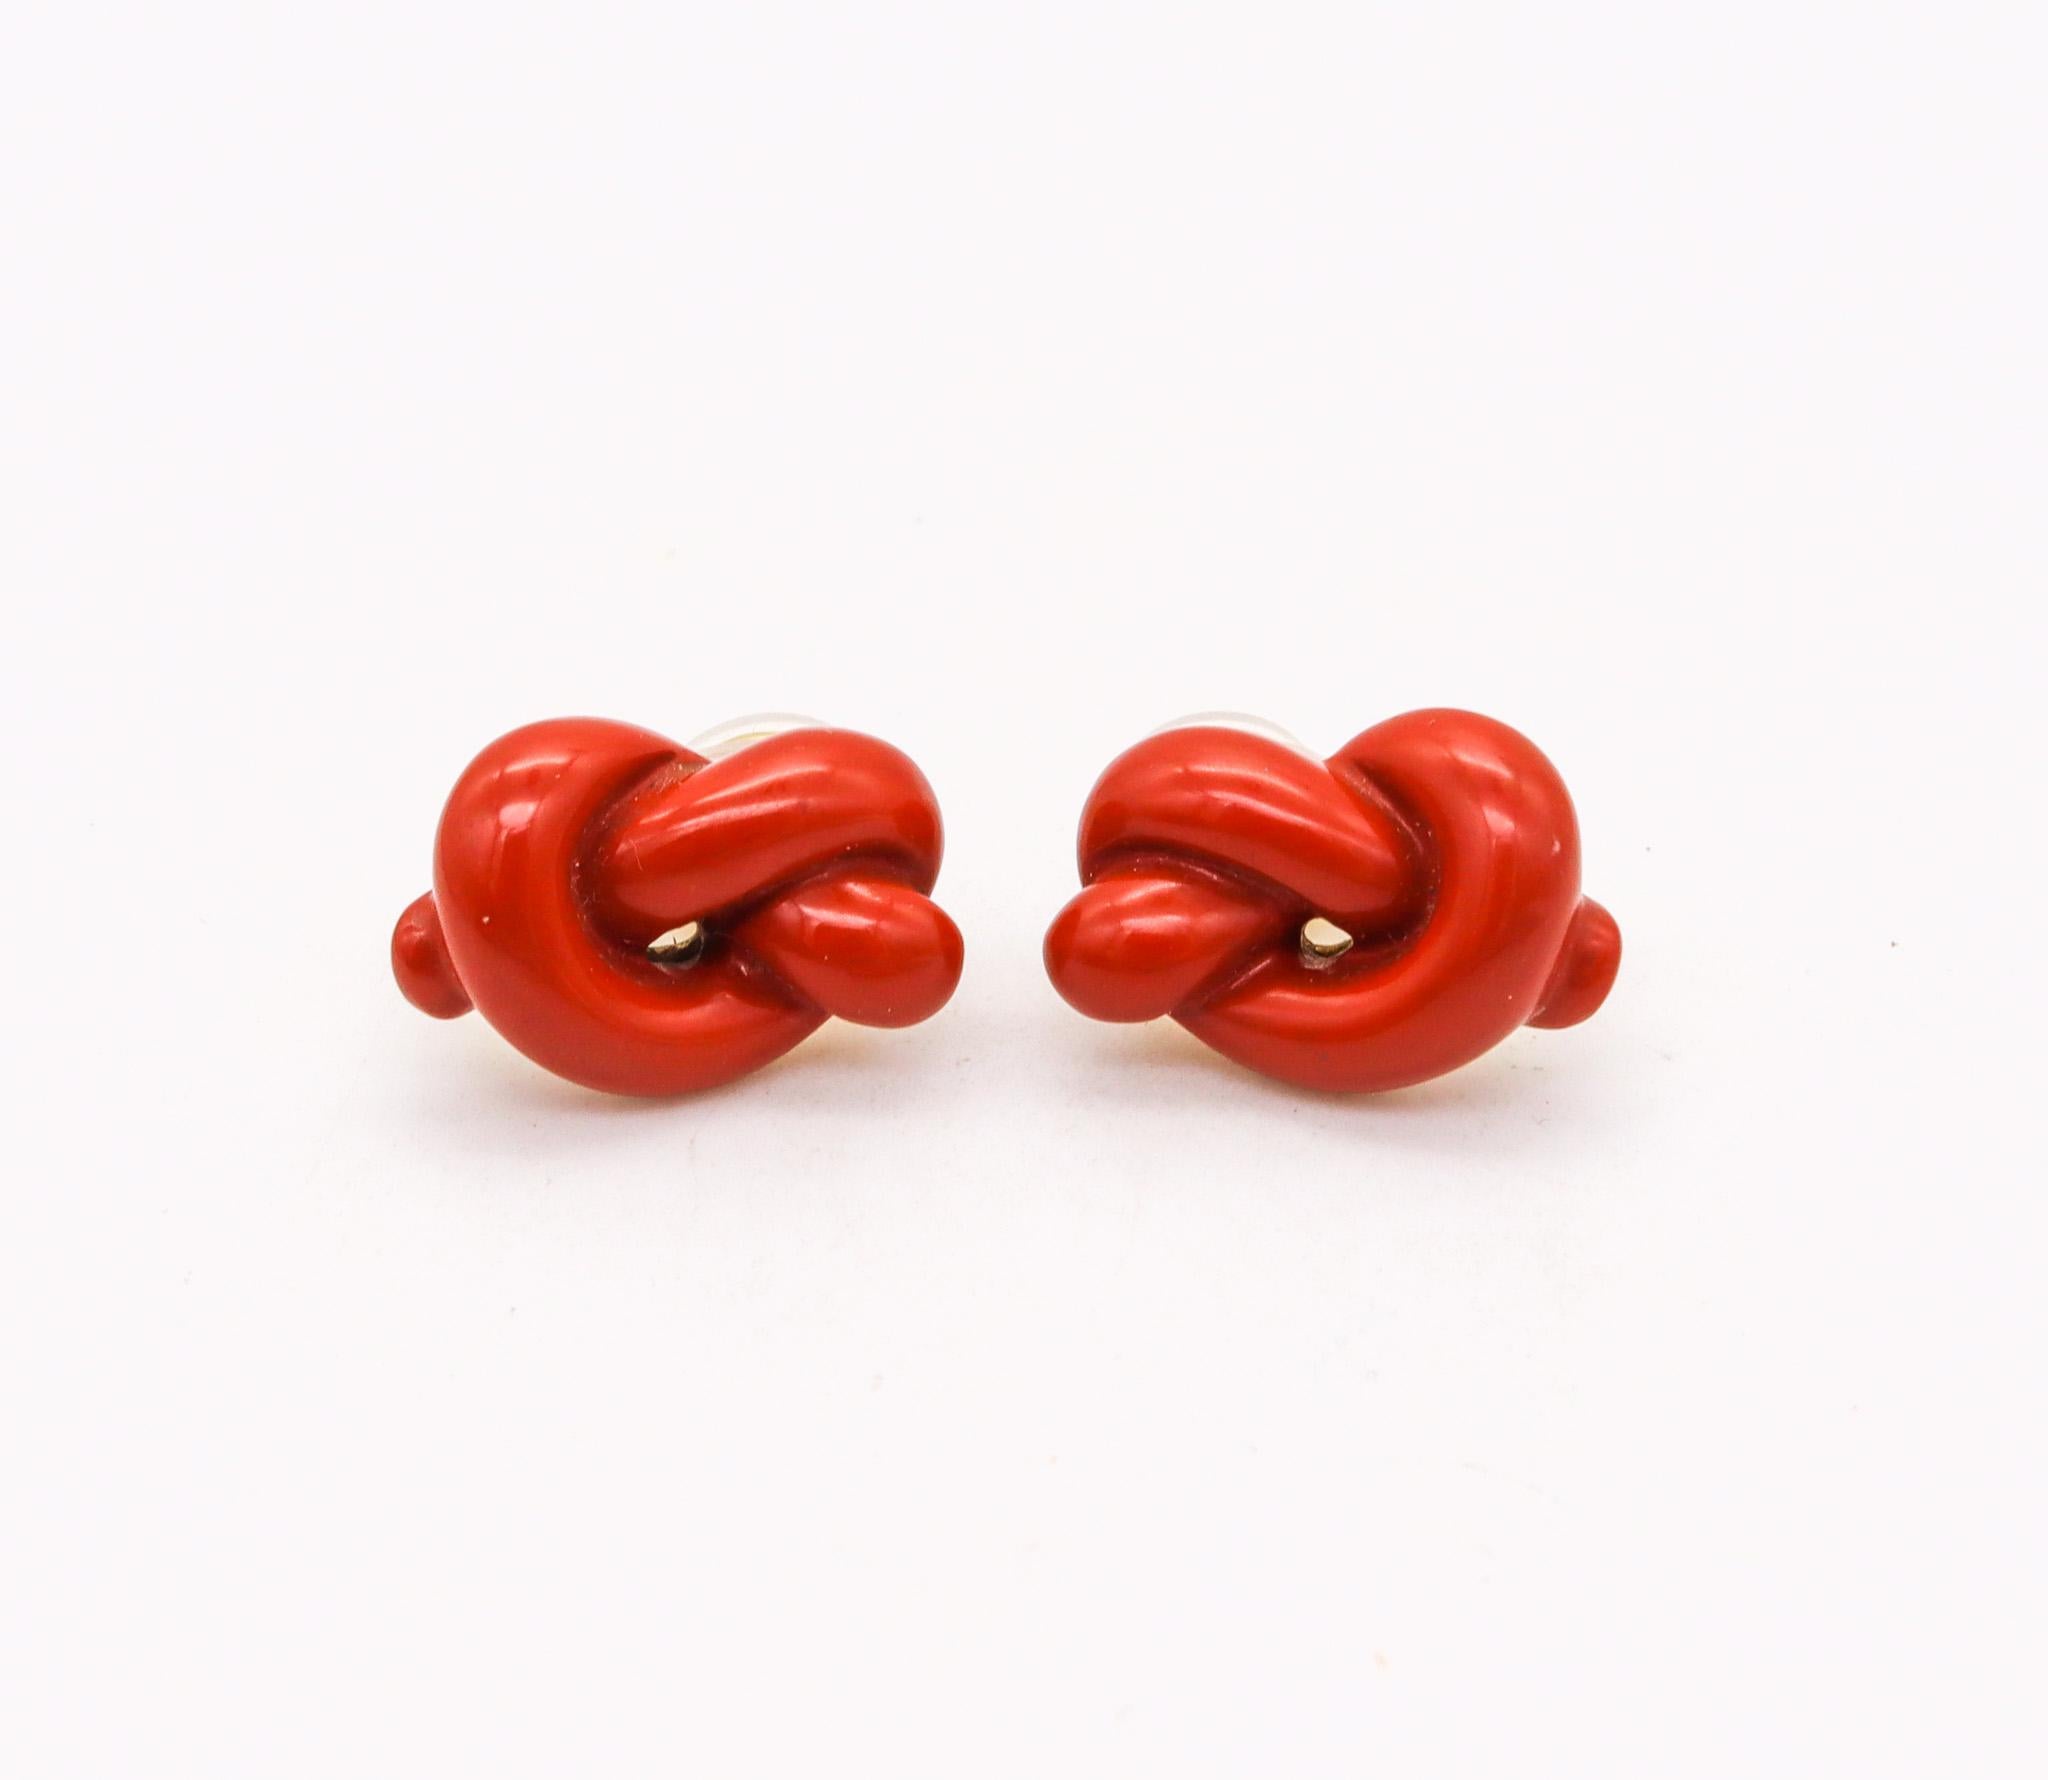 Knots-Ohrringe, entworfen von Angela Cummings für Tiffany & Co.

Ein elegantes und verspieltes Paar Ohrringe in freier Form, das 1978 von Angela Cummings für die Tiffany Studios in New York City entworfen wurde. Sie sind aus massivem 18-karätigem